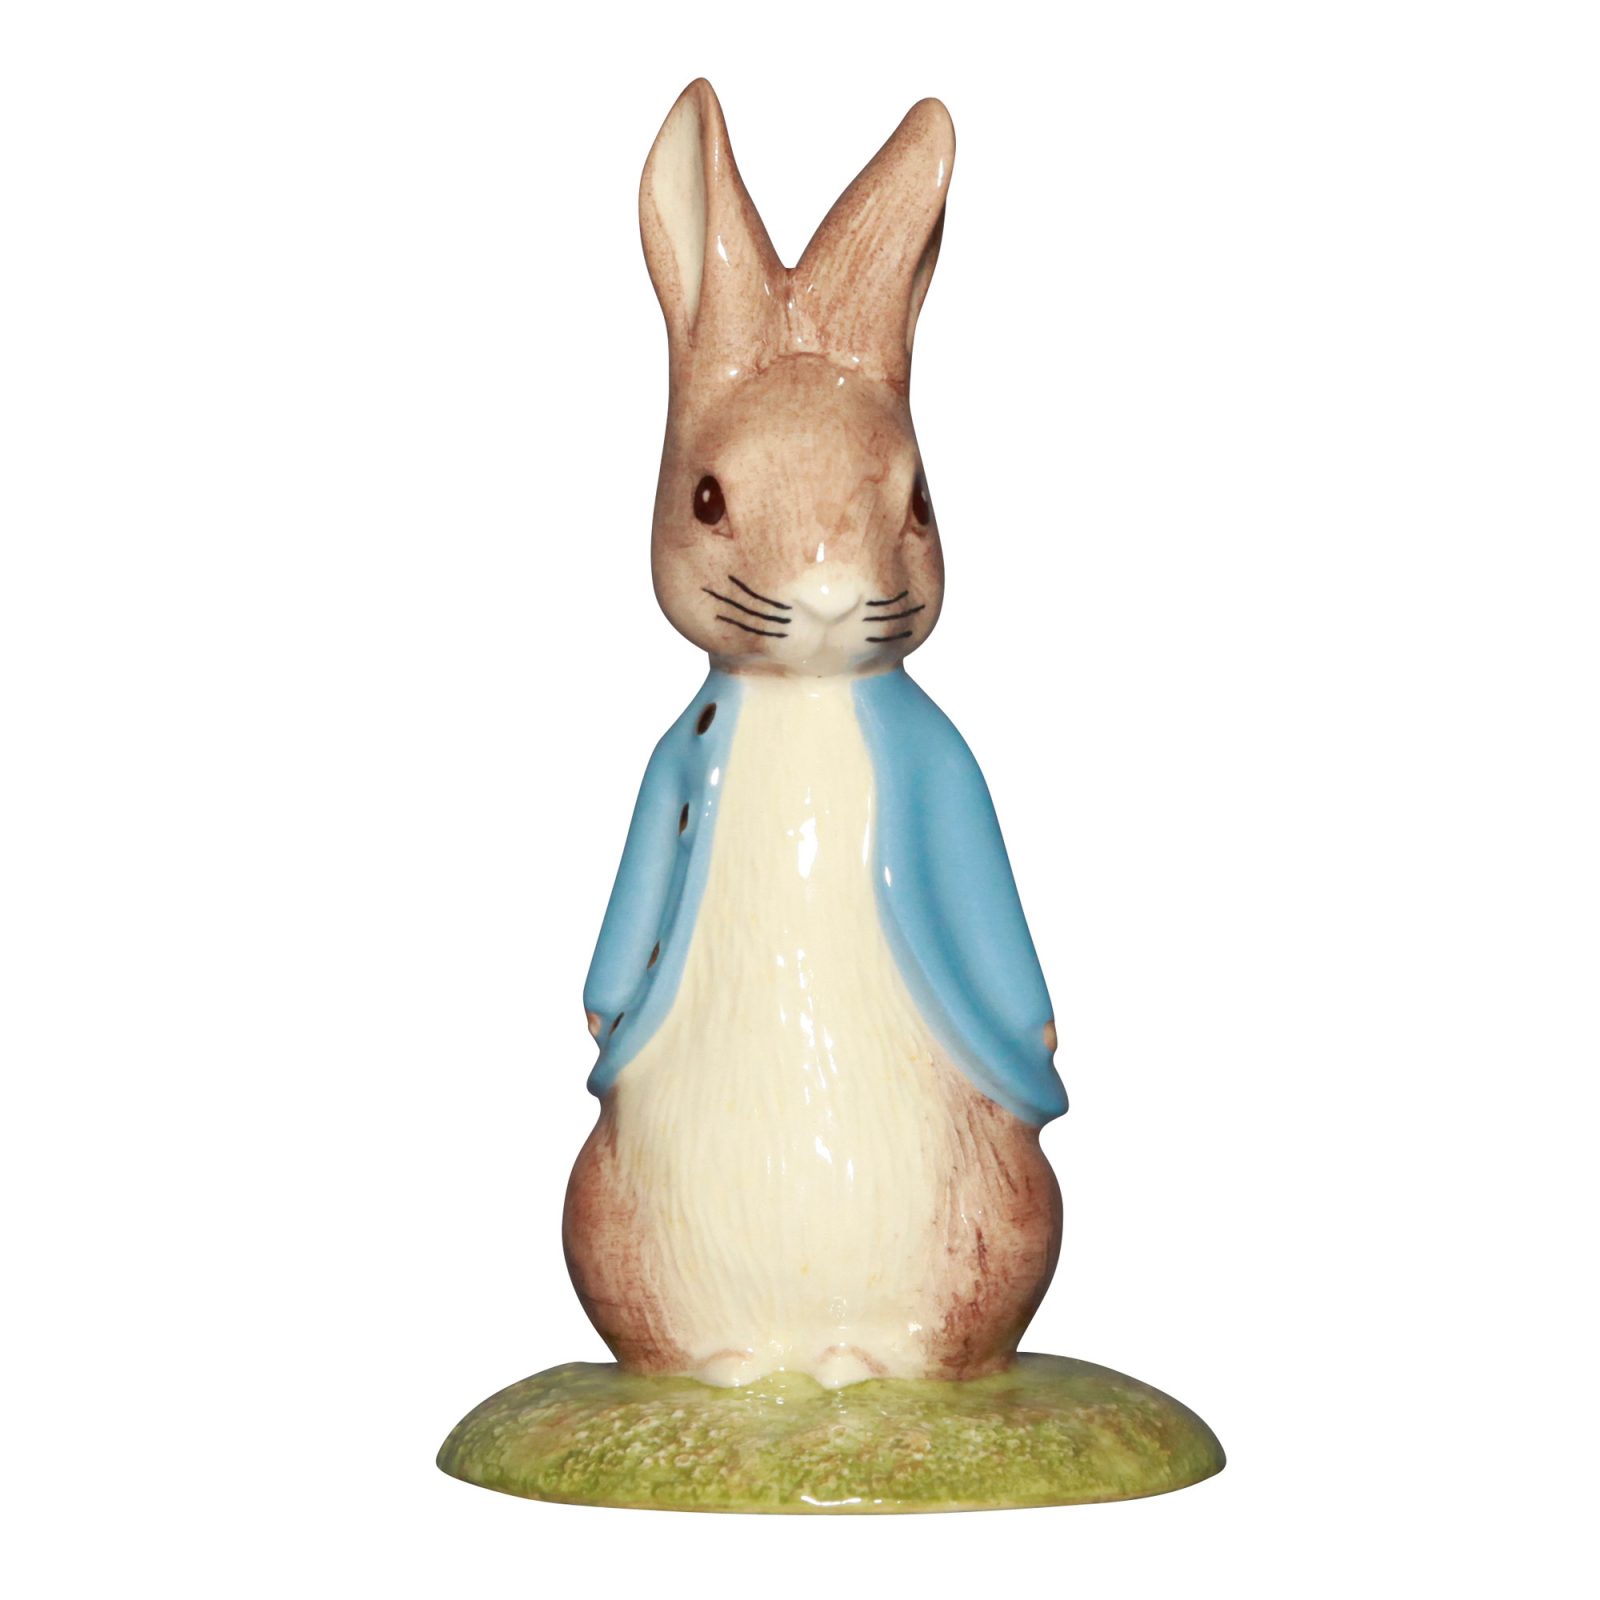 Sweet Peter Rabbit NBSWK - Beatrix Potter Figure